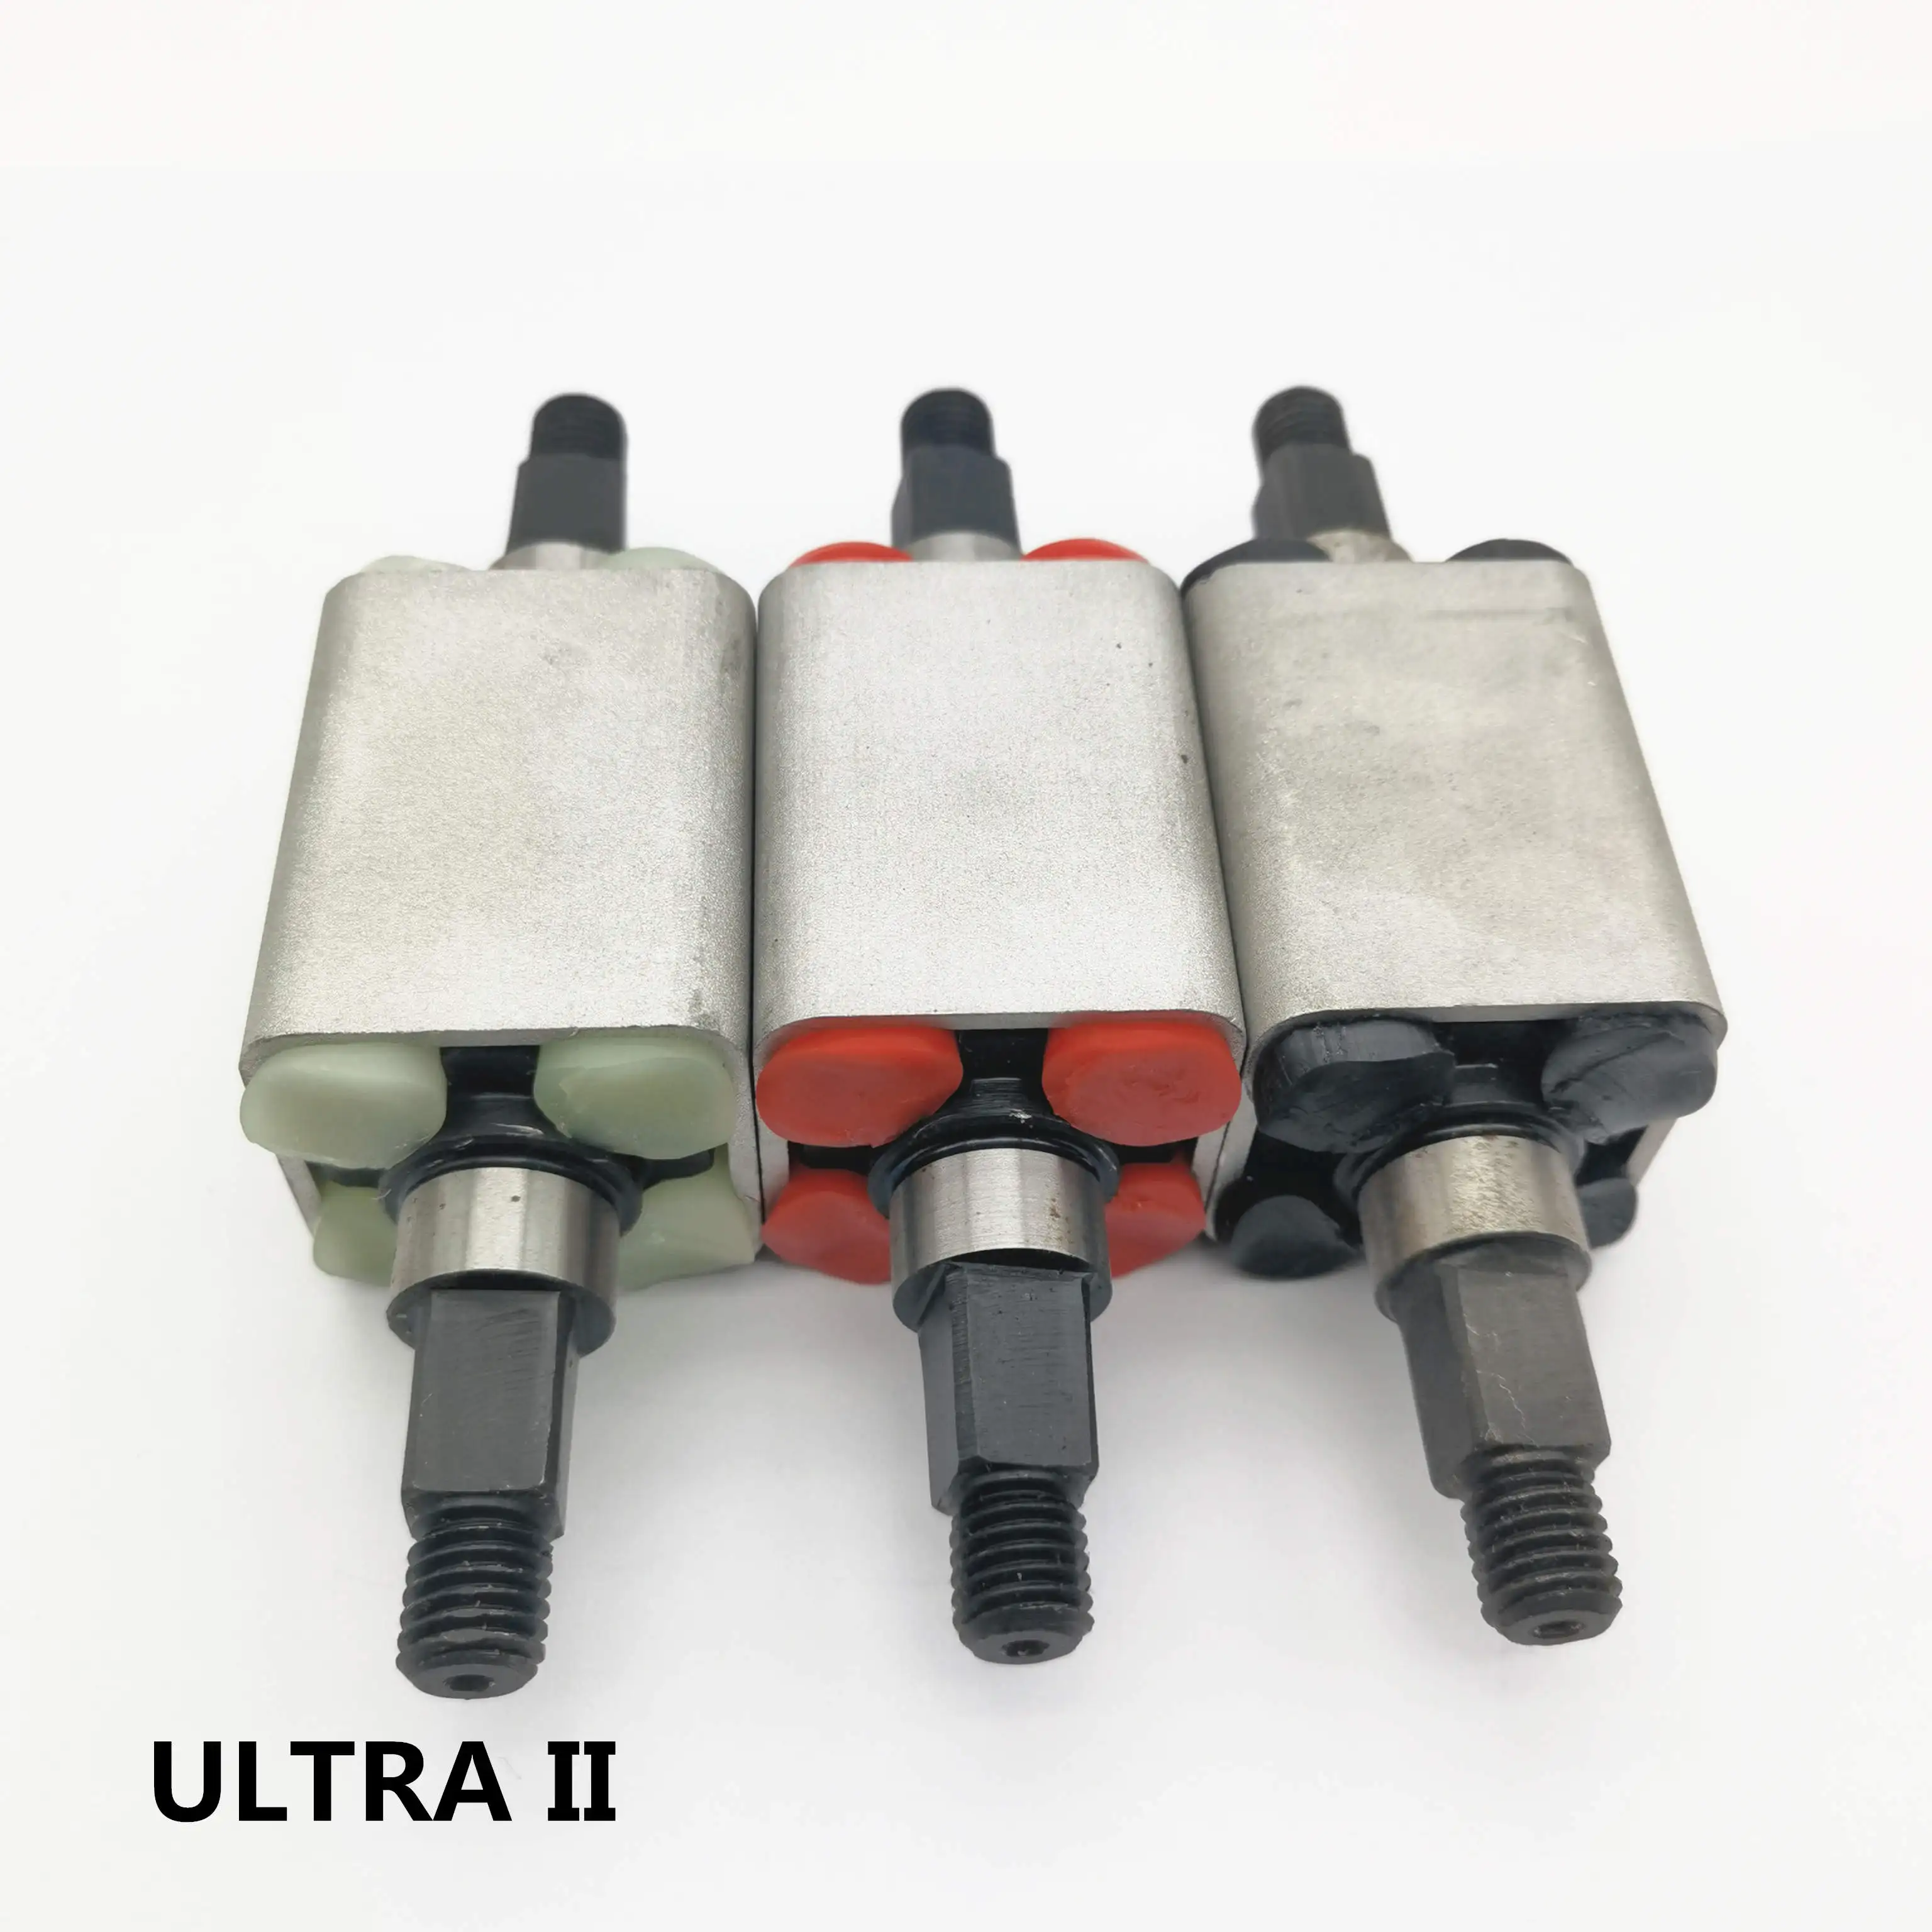 Комплект подвески из полиуретана для ultra2 MINIMOTORS DT ULTRA II с блоком демпфирования электрического скутера